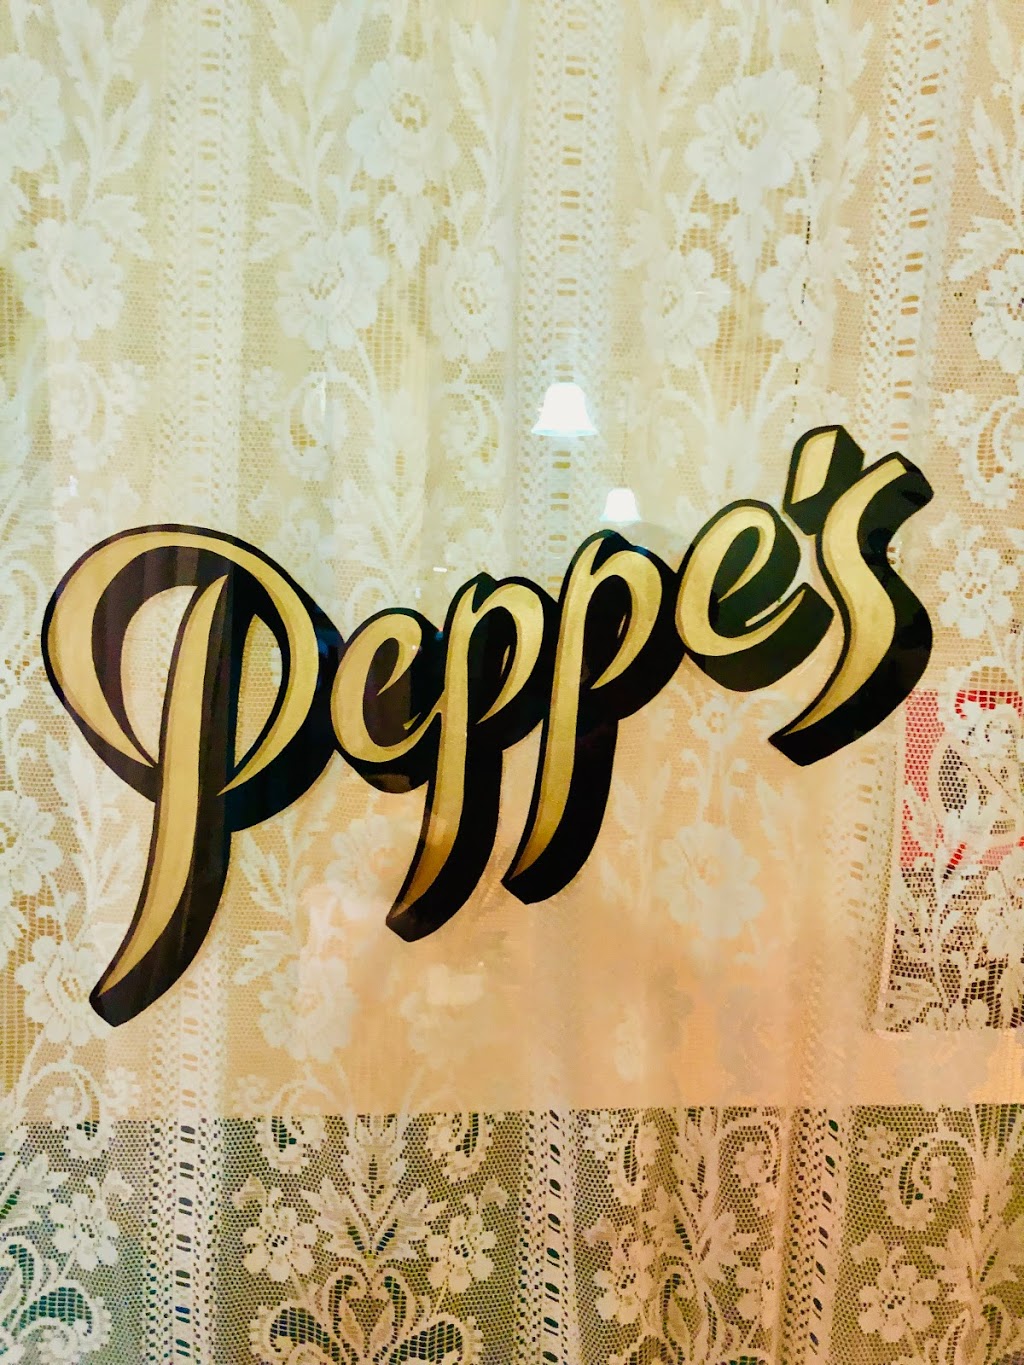 Peppe’s | restaurant | 58 Wharf St, Forster NSW 2428, Australia | 0474274834 OR +61 474 274 834